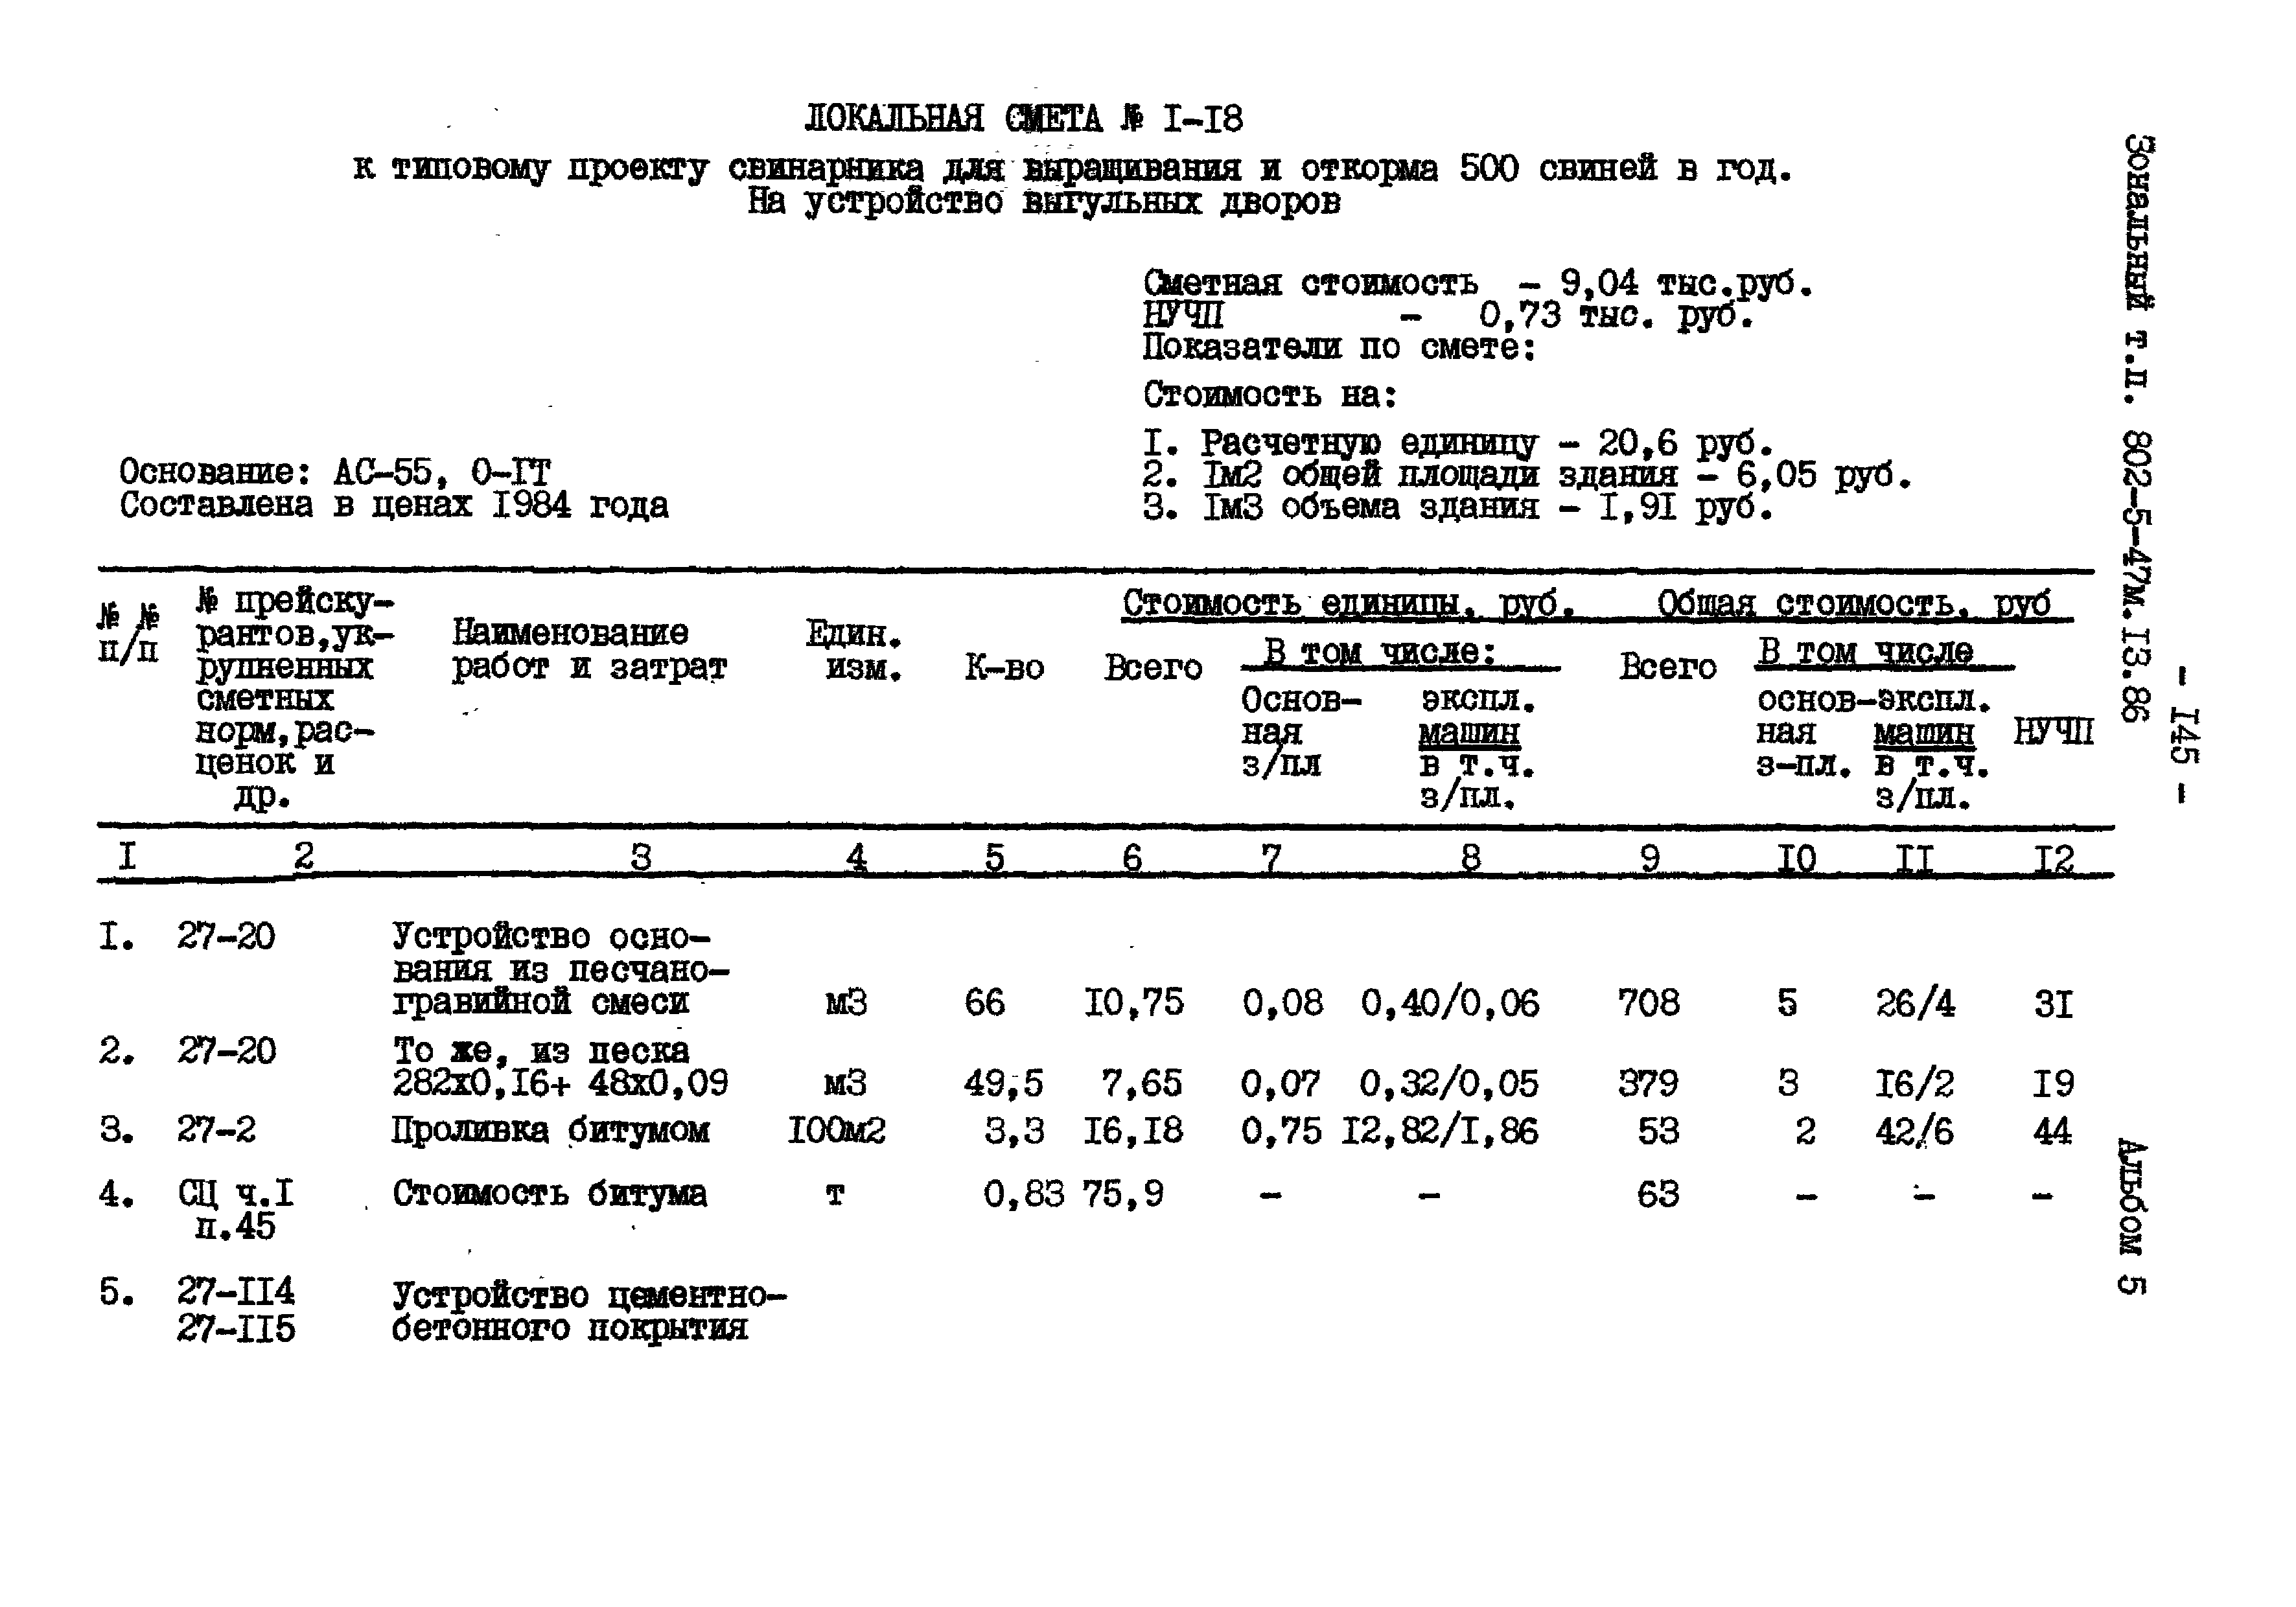 Типовой проект 802-5-47м.13.86